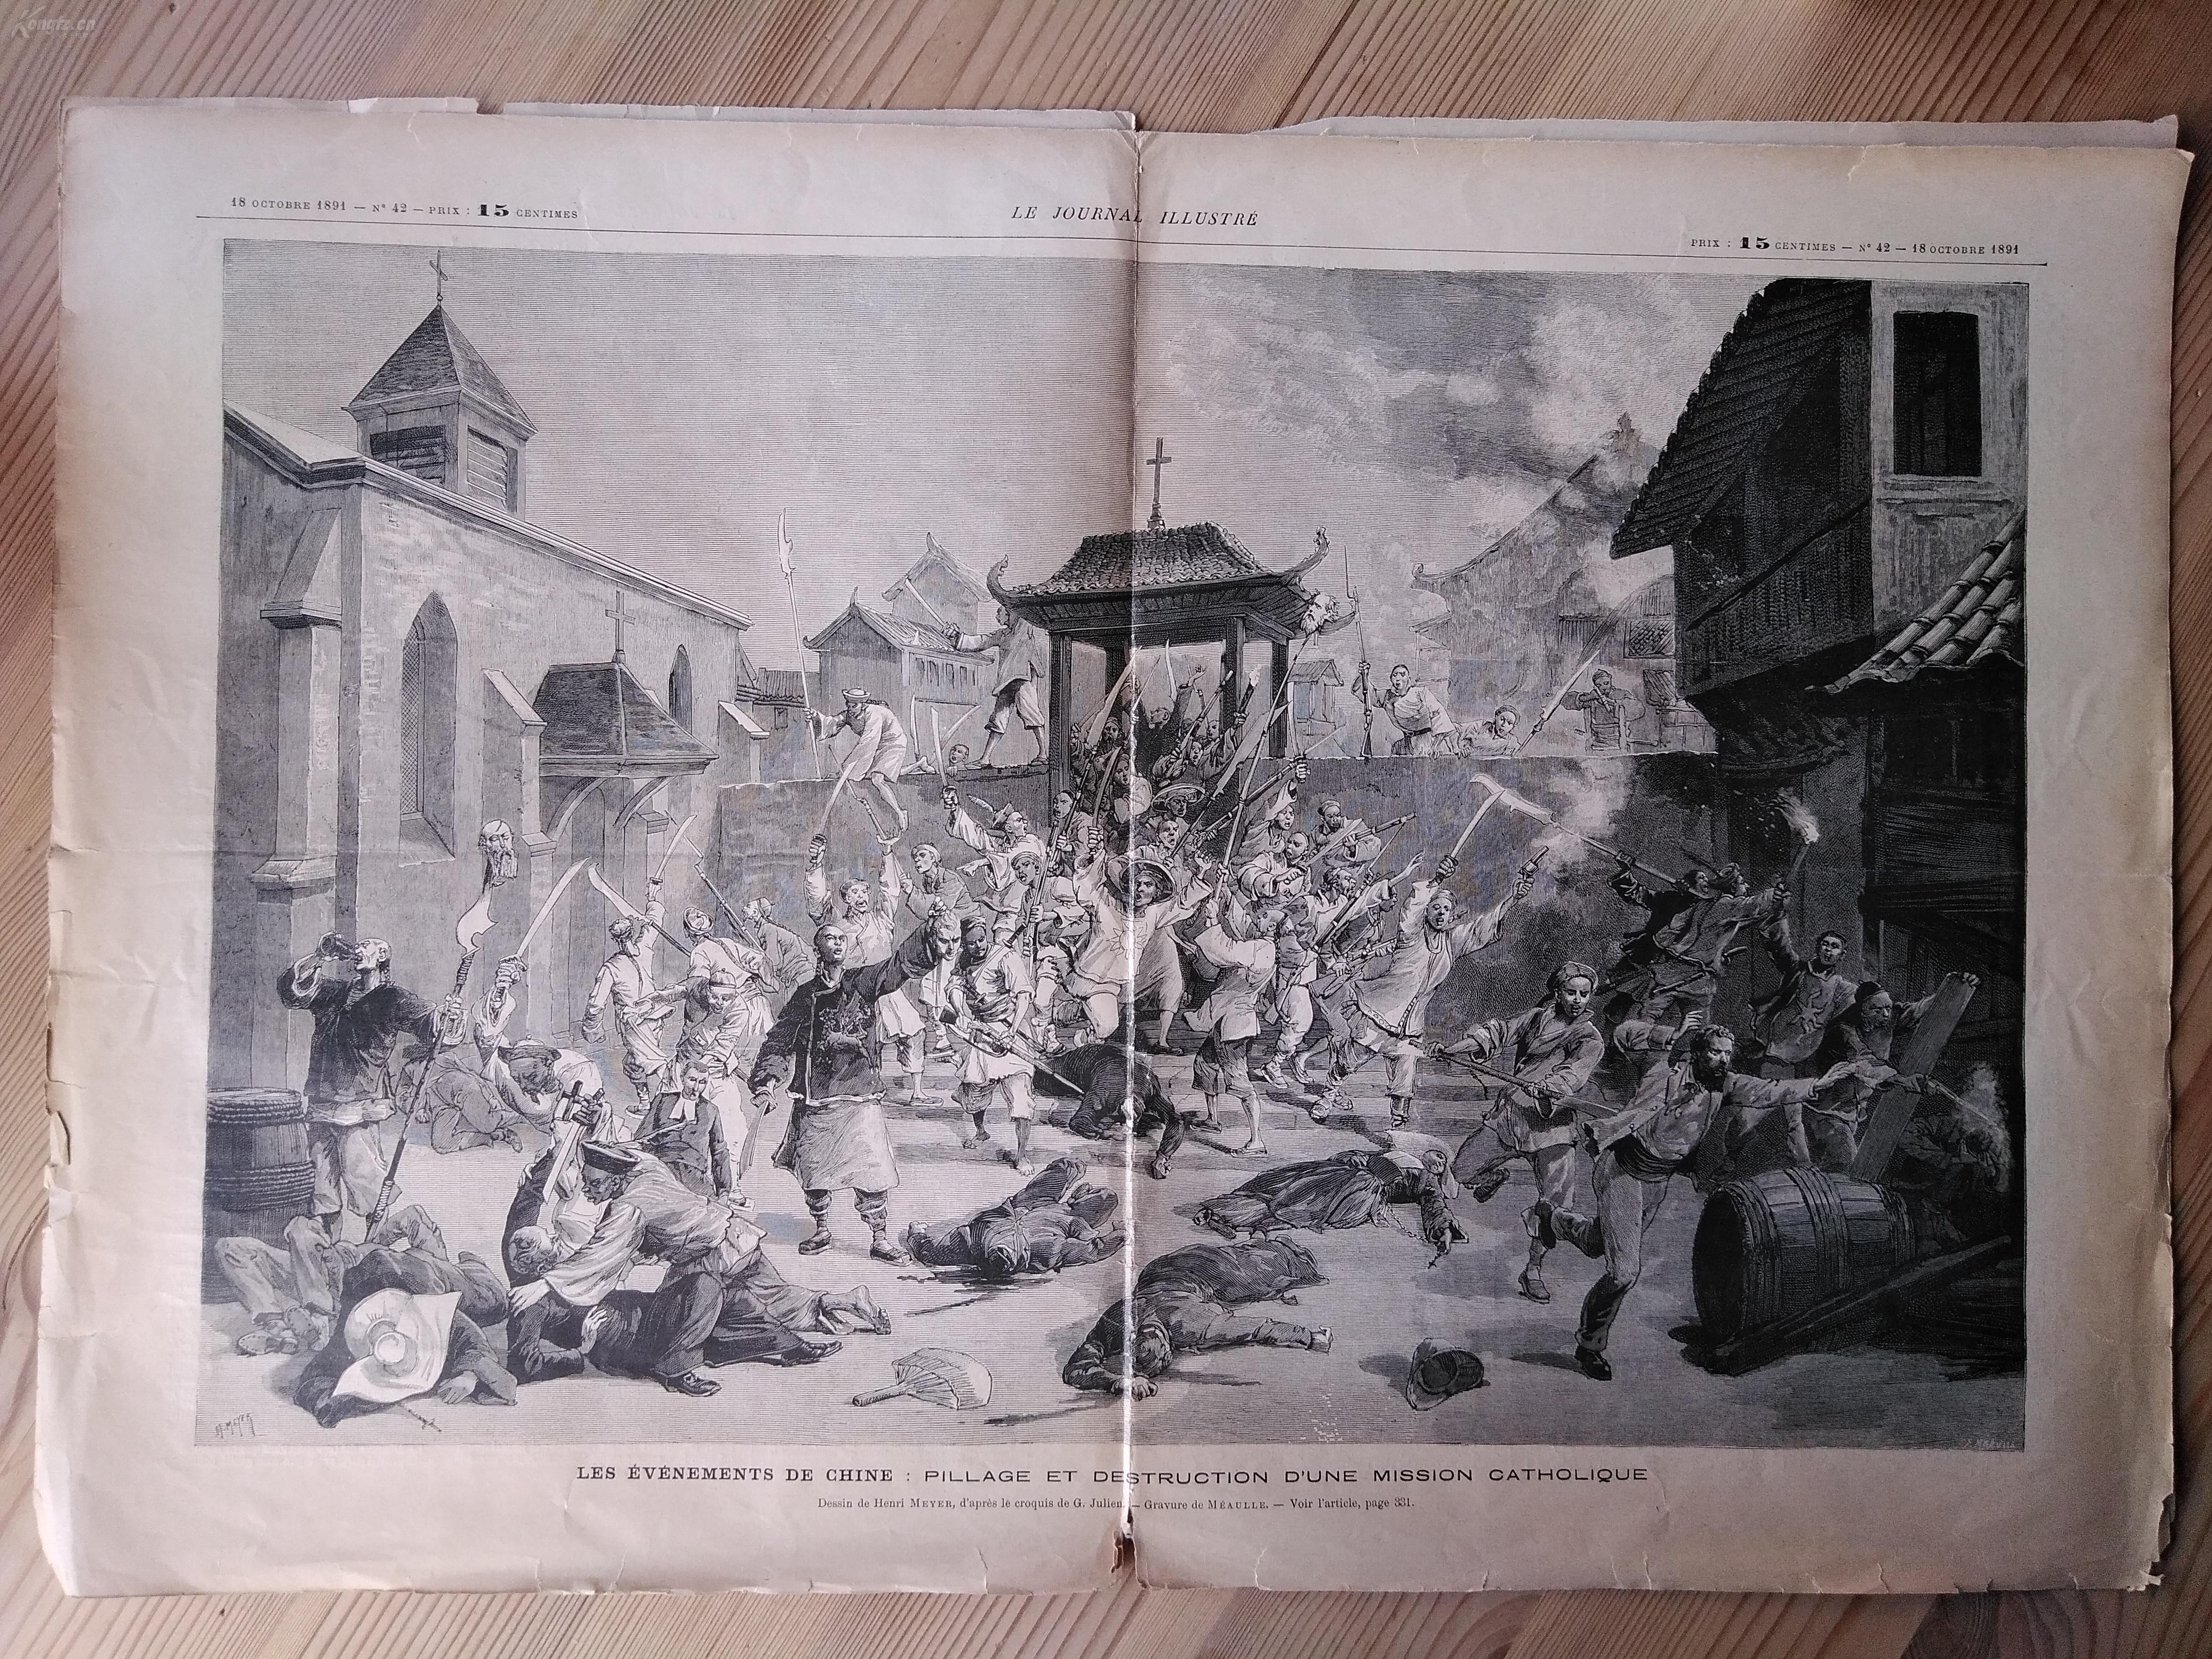 法国画报le journal illustre 1891年义和团反教运动 超大图8开双页